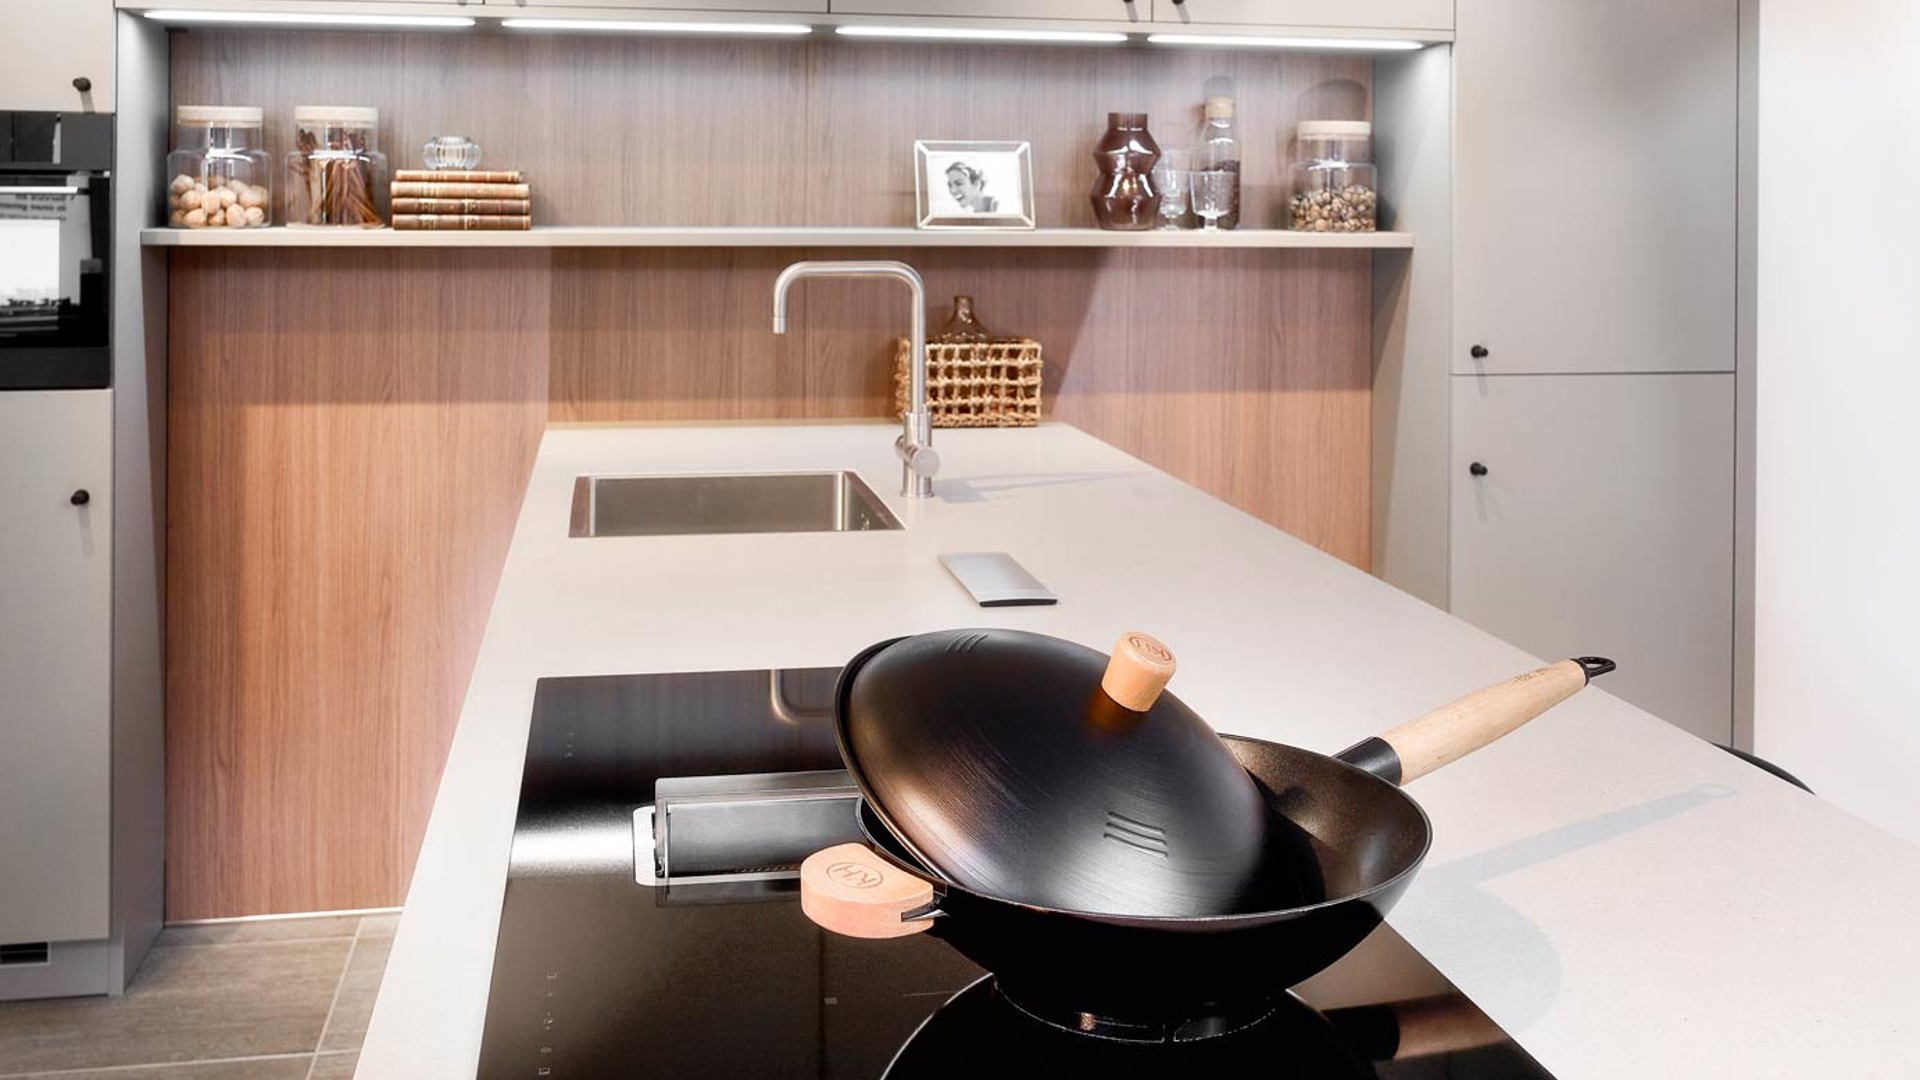 Deze strakke moderne keuken heeft een Pelgrim inductiekookplaat met afzuiging 